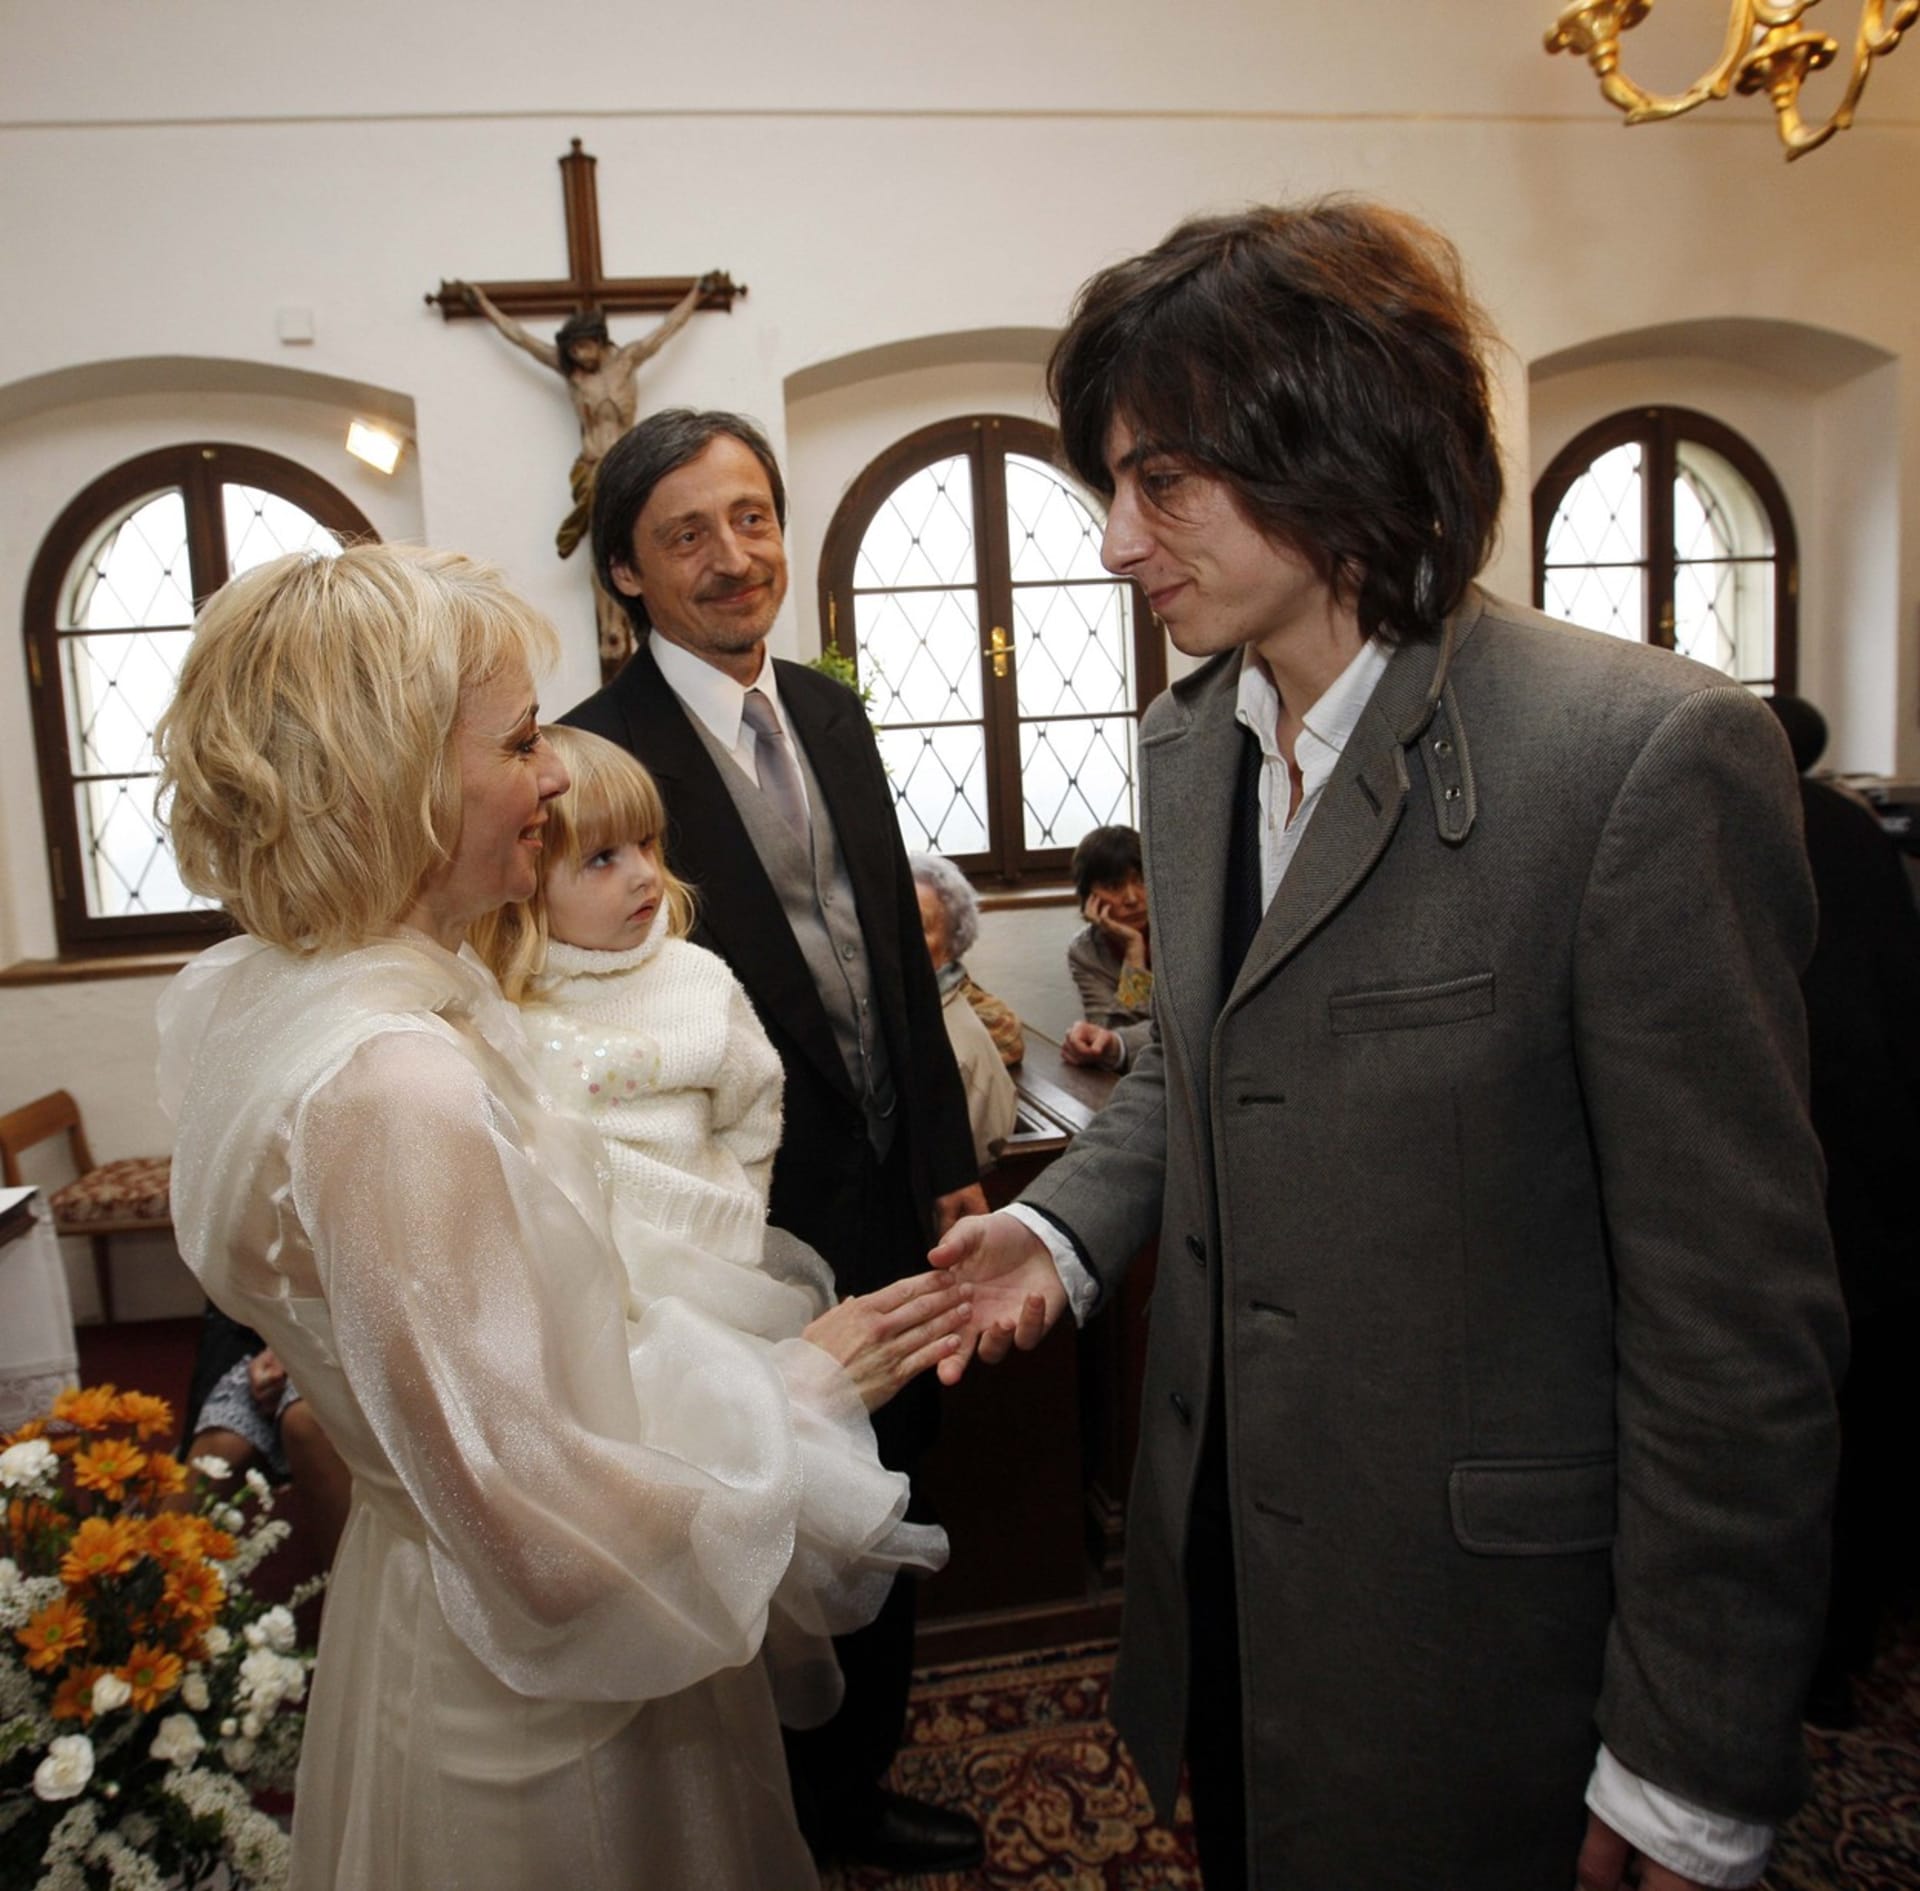 Matěj Stropnický na svatbě svého otce Martina Stropnického s herečkou Veronikou Žilkovou